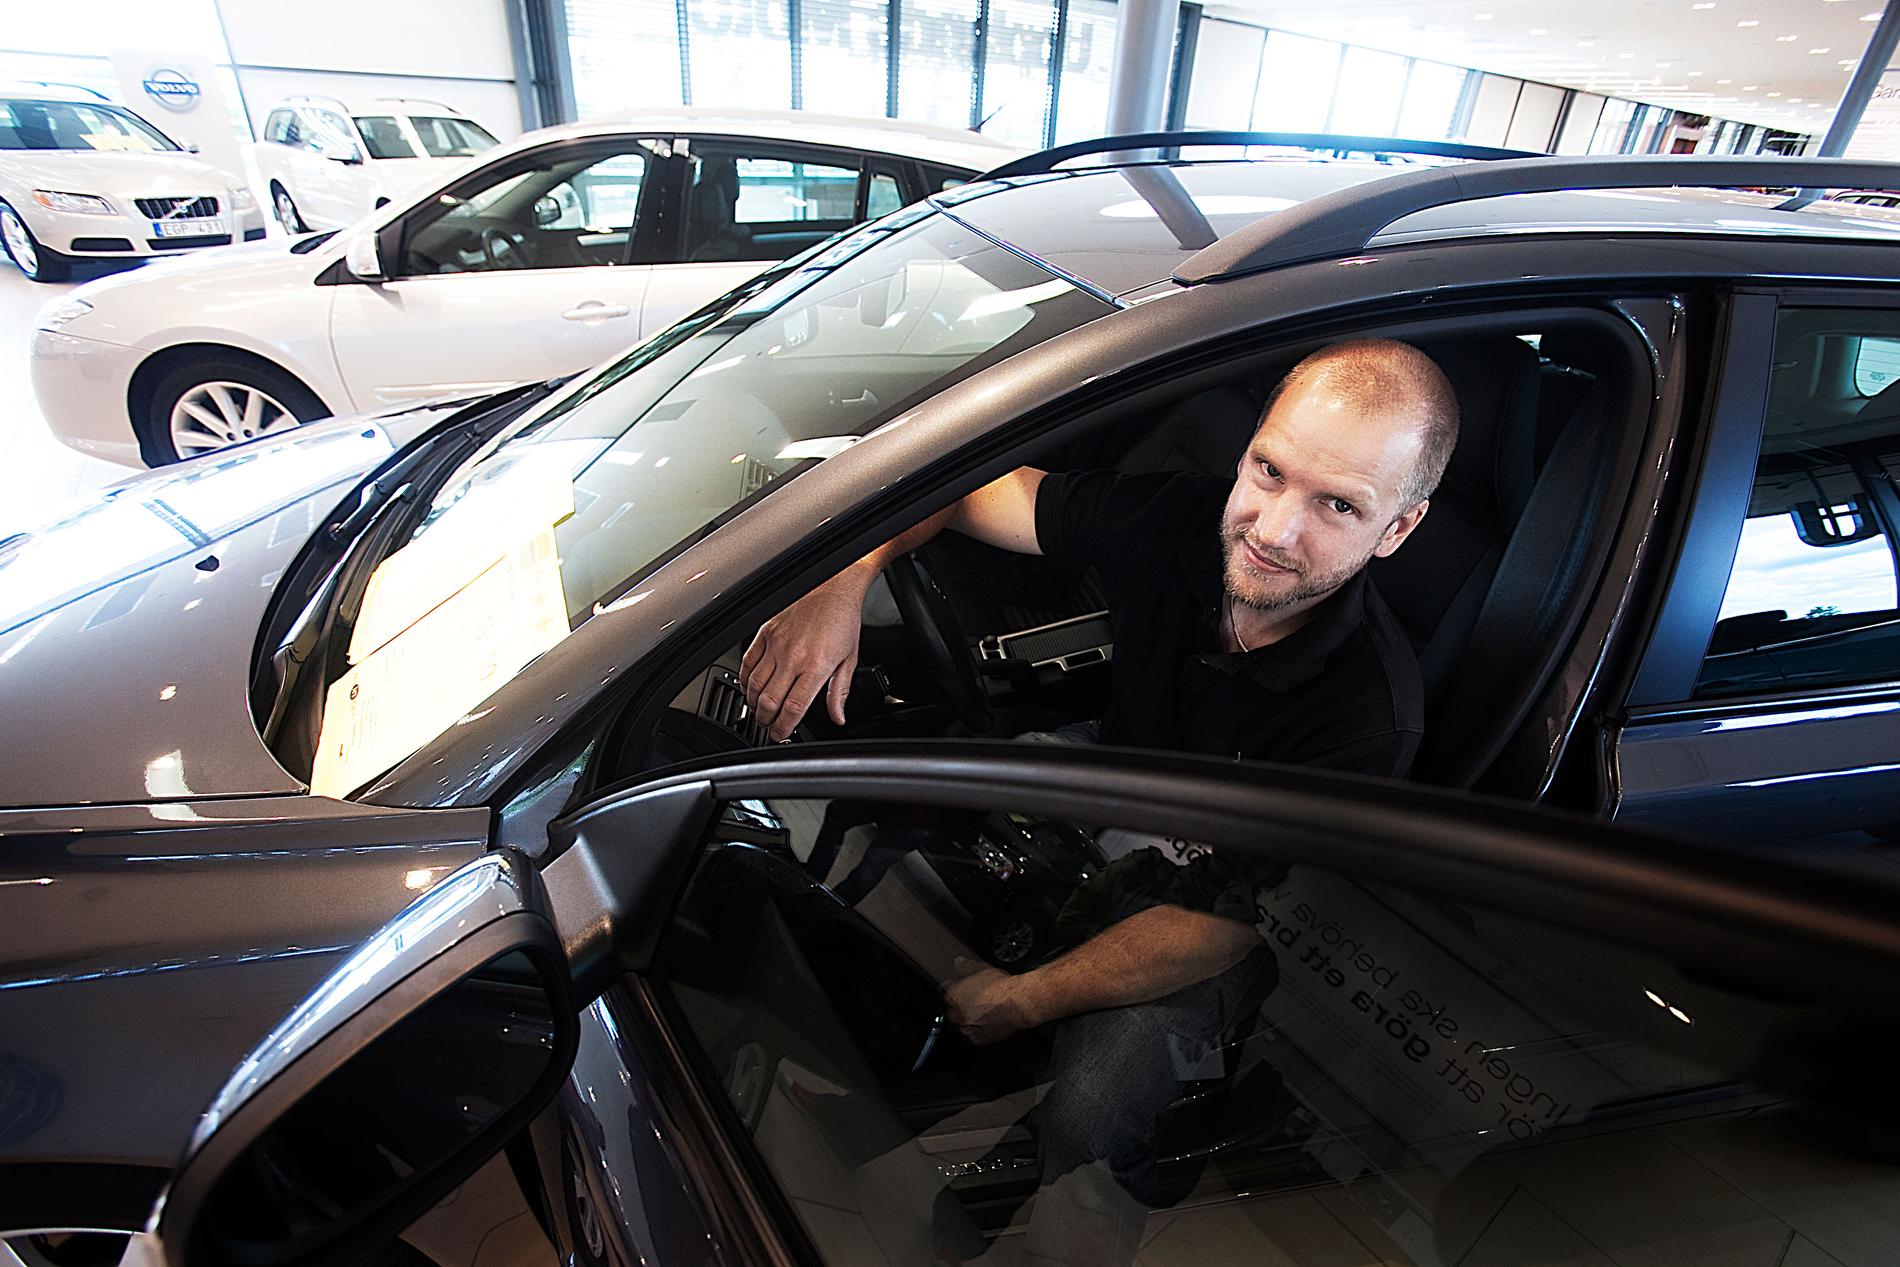 Anders Vestman från Uppsala är på jakt efter en kombi och har fastnat för Volvo V50. ”Vi har hållit på i ett halvår och jämfört priser på nätet”, säger han.